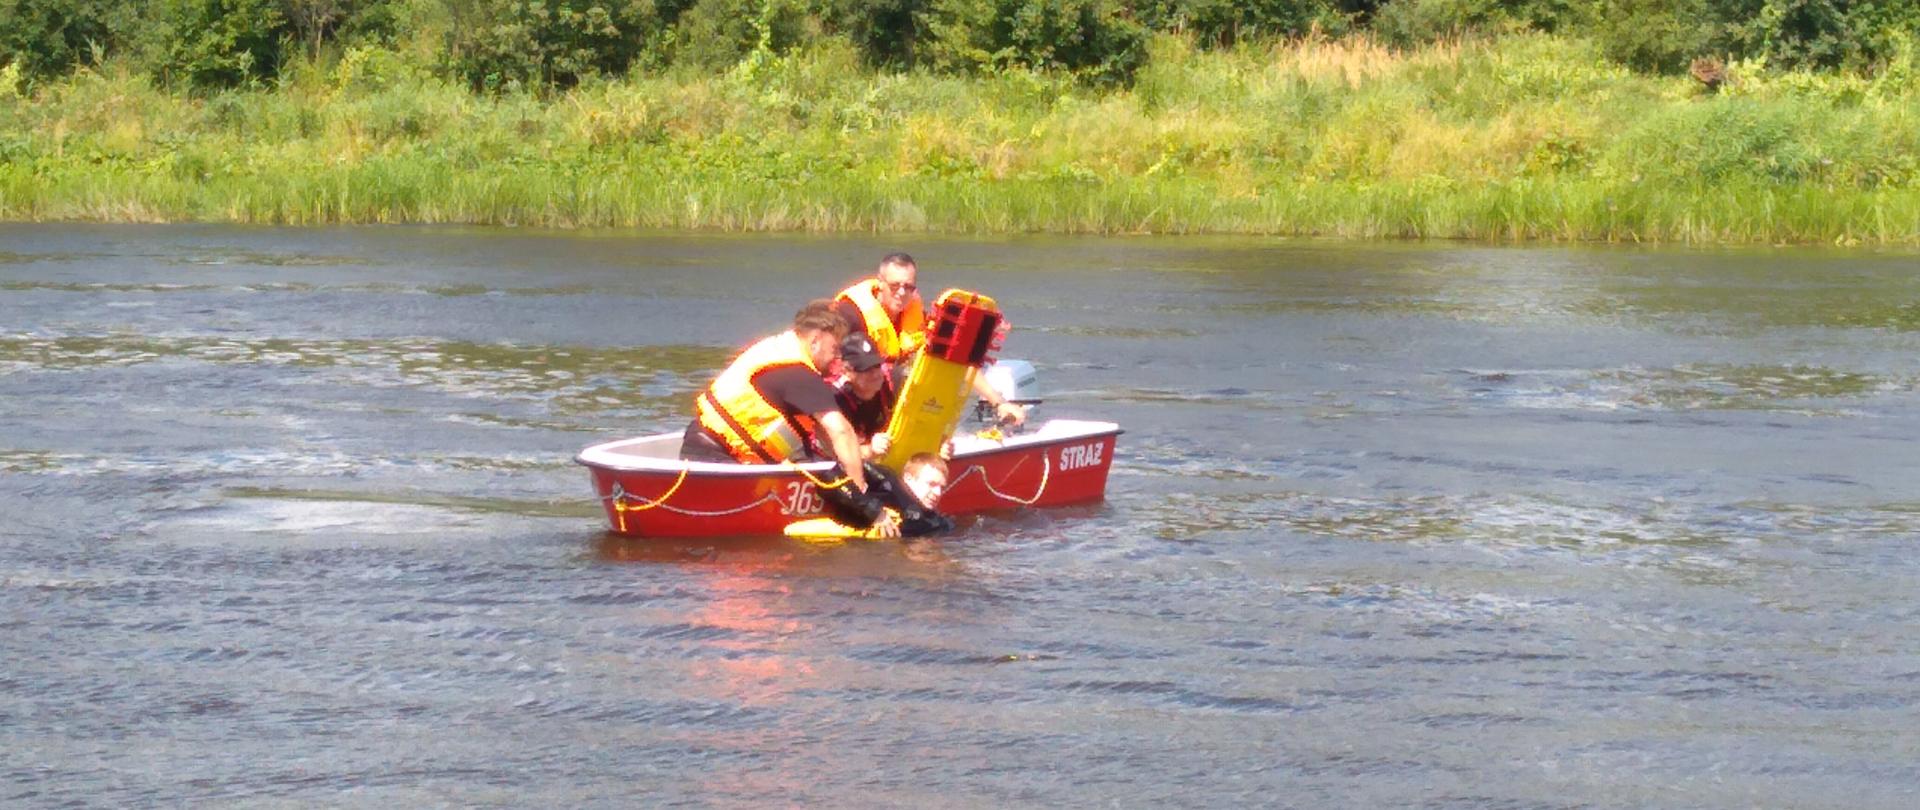 Trzech strażaków ubranych w kamizelki ratownicze którzy znajdują się na łodzi i podejmują osobę topiącą się przy pomocy deski ortopedycznej.